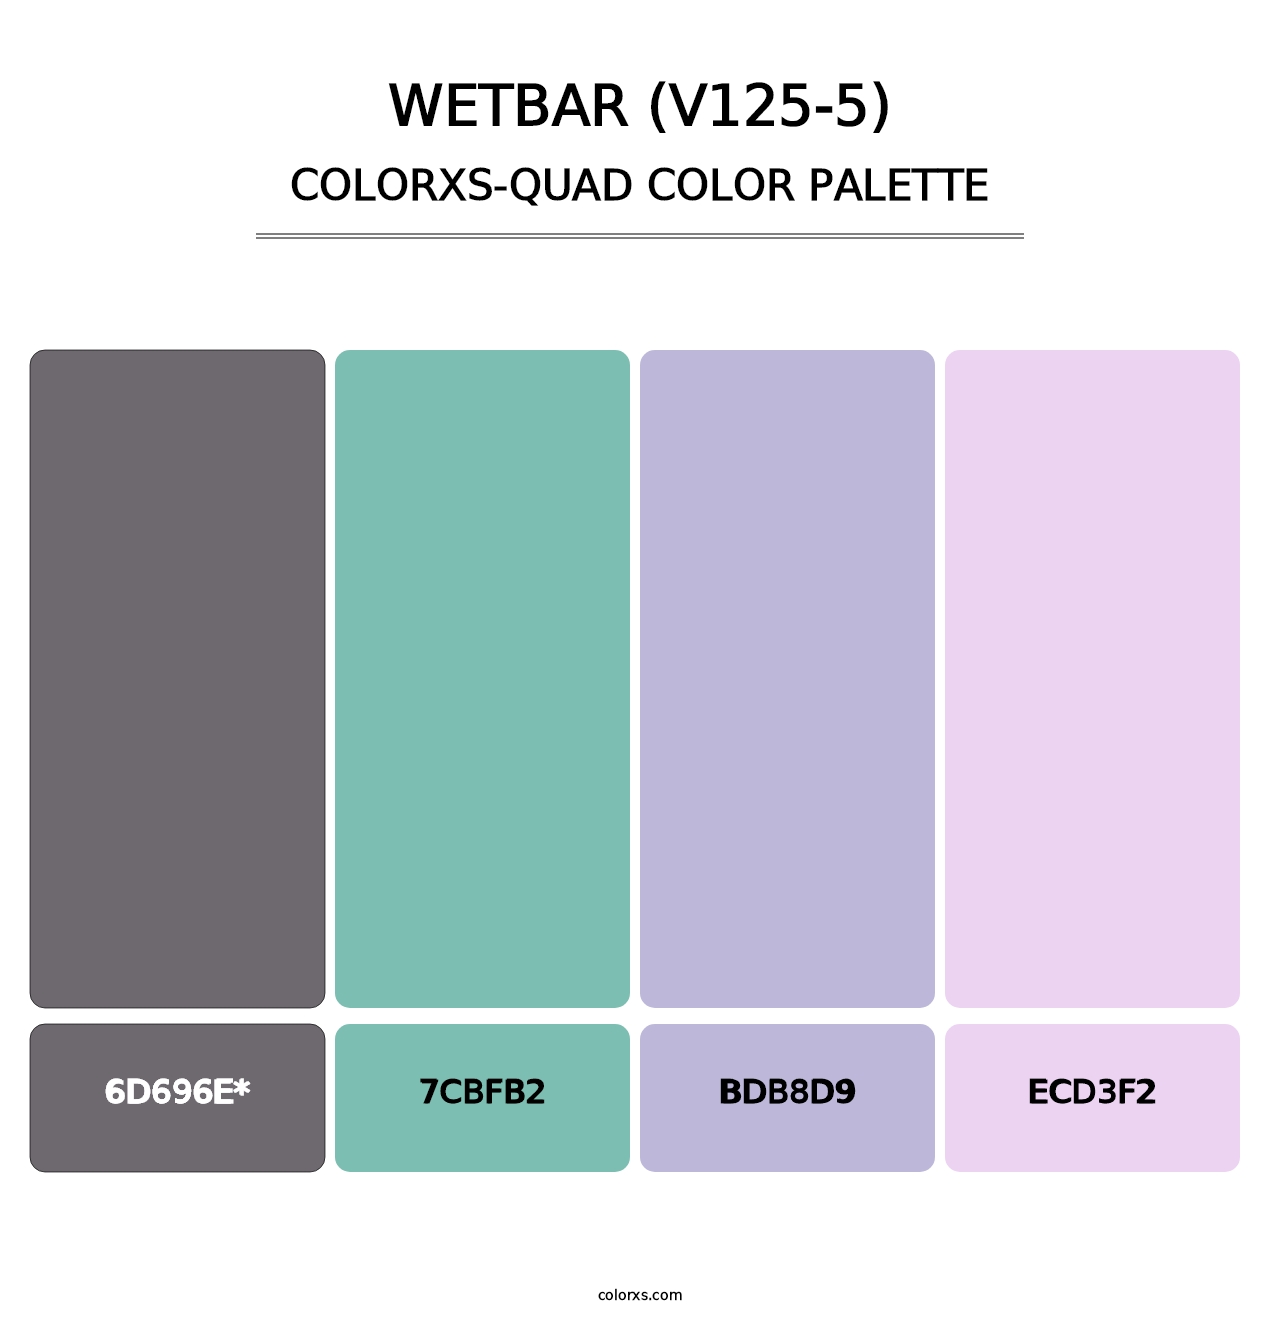 Wetbar (V125-5) - Colorxs Quad Palette